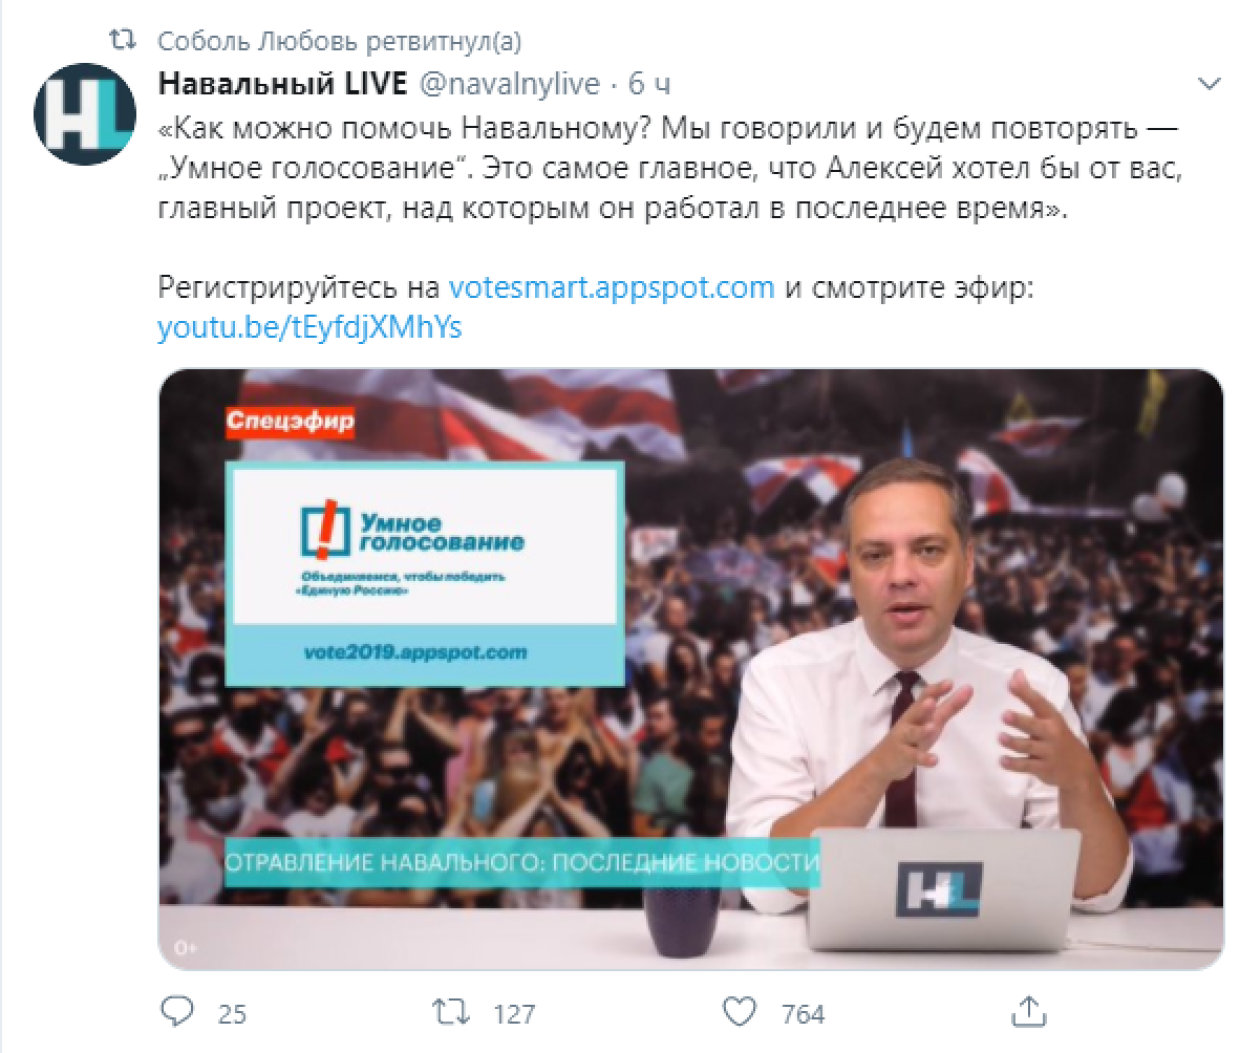 Гаспарян: «Умное голосование» останется безуспешным с Навальным или без